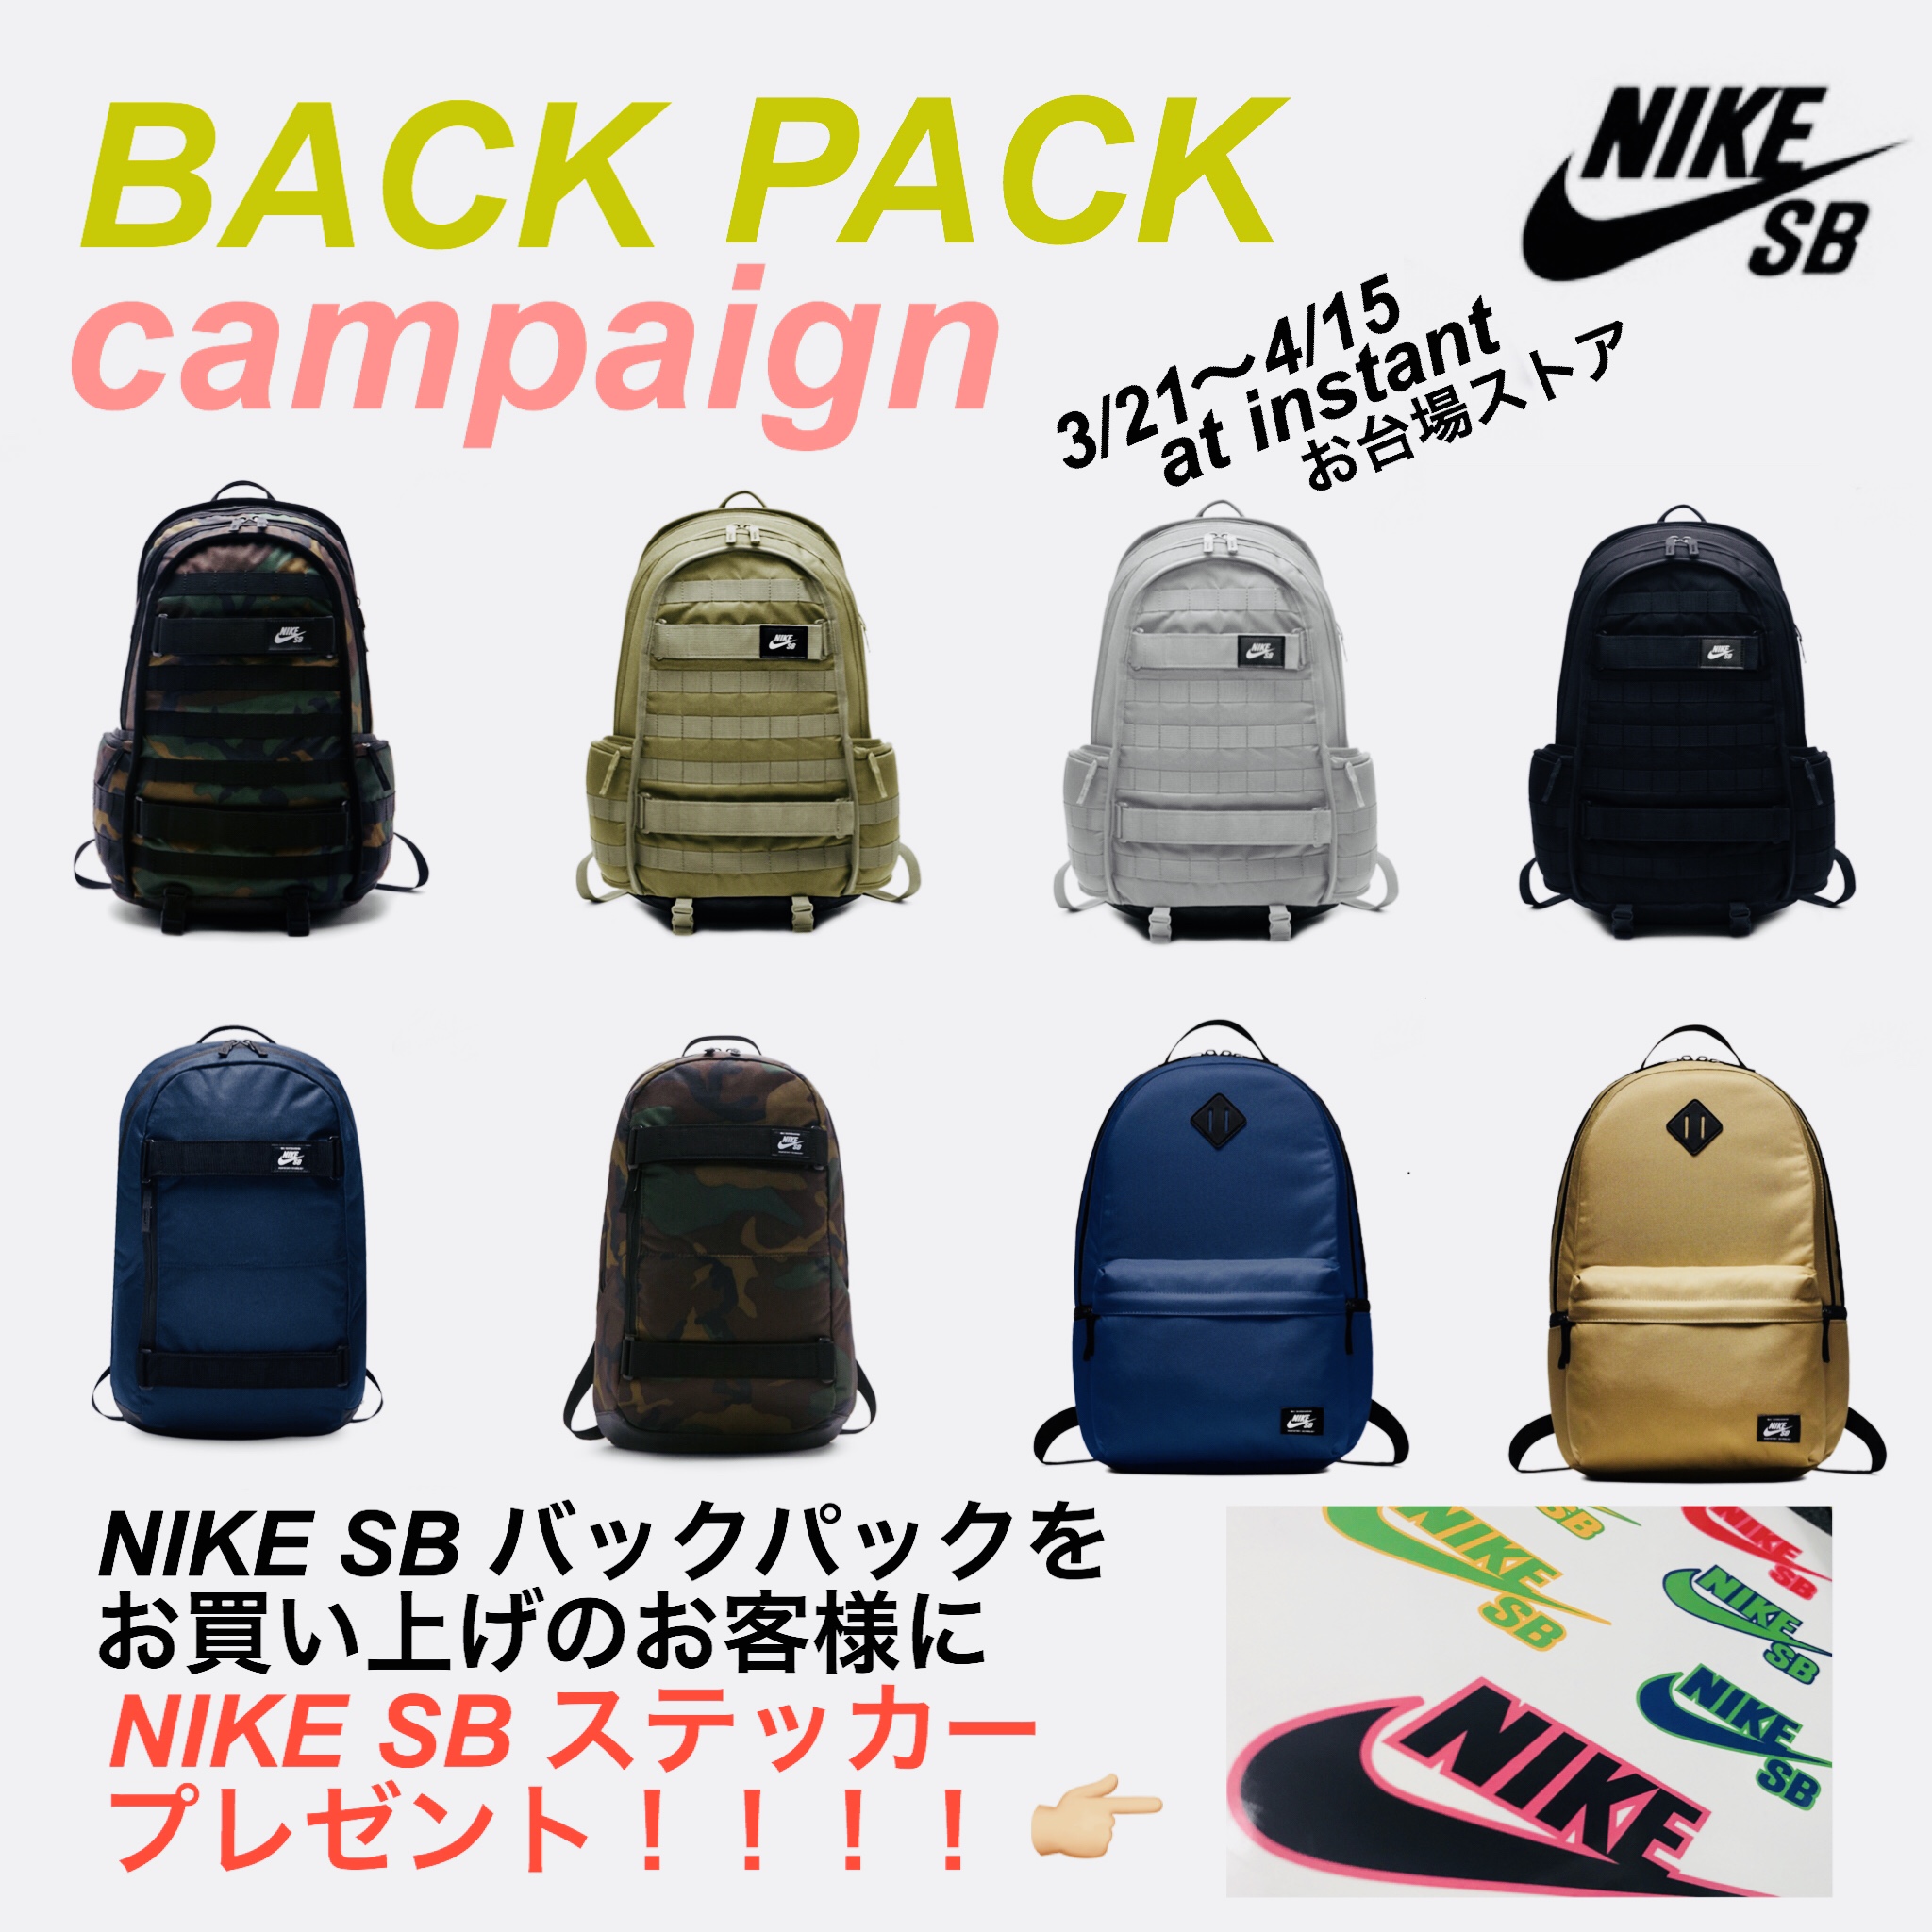 Back Pack Campaign 始まります スケボー通販ならインスタント お台場ストアblog